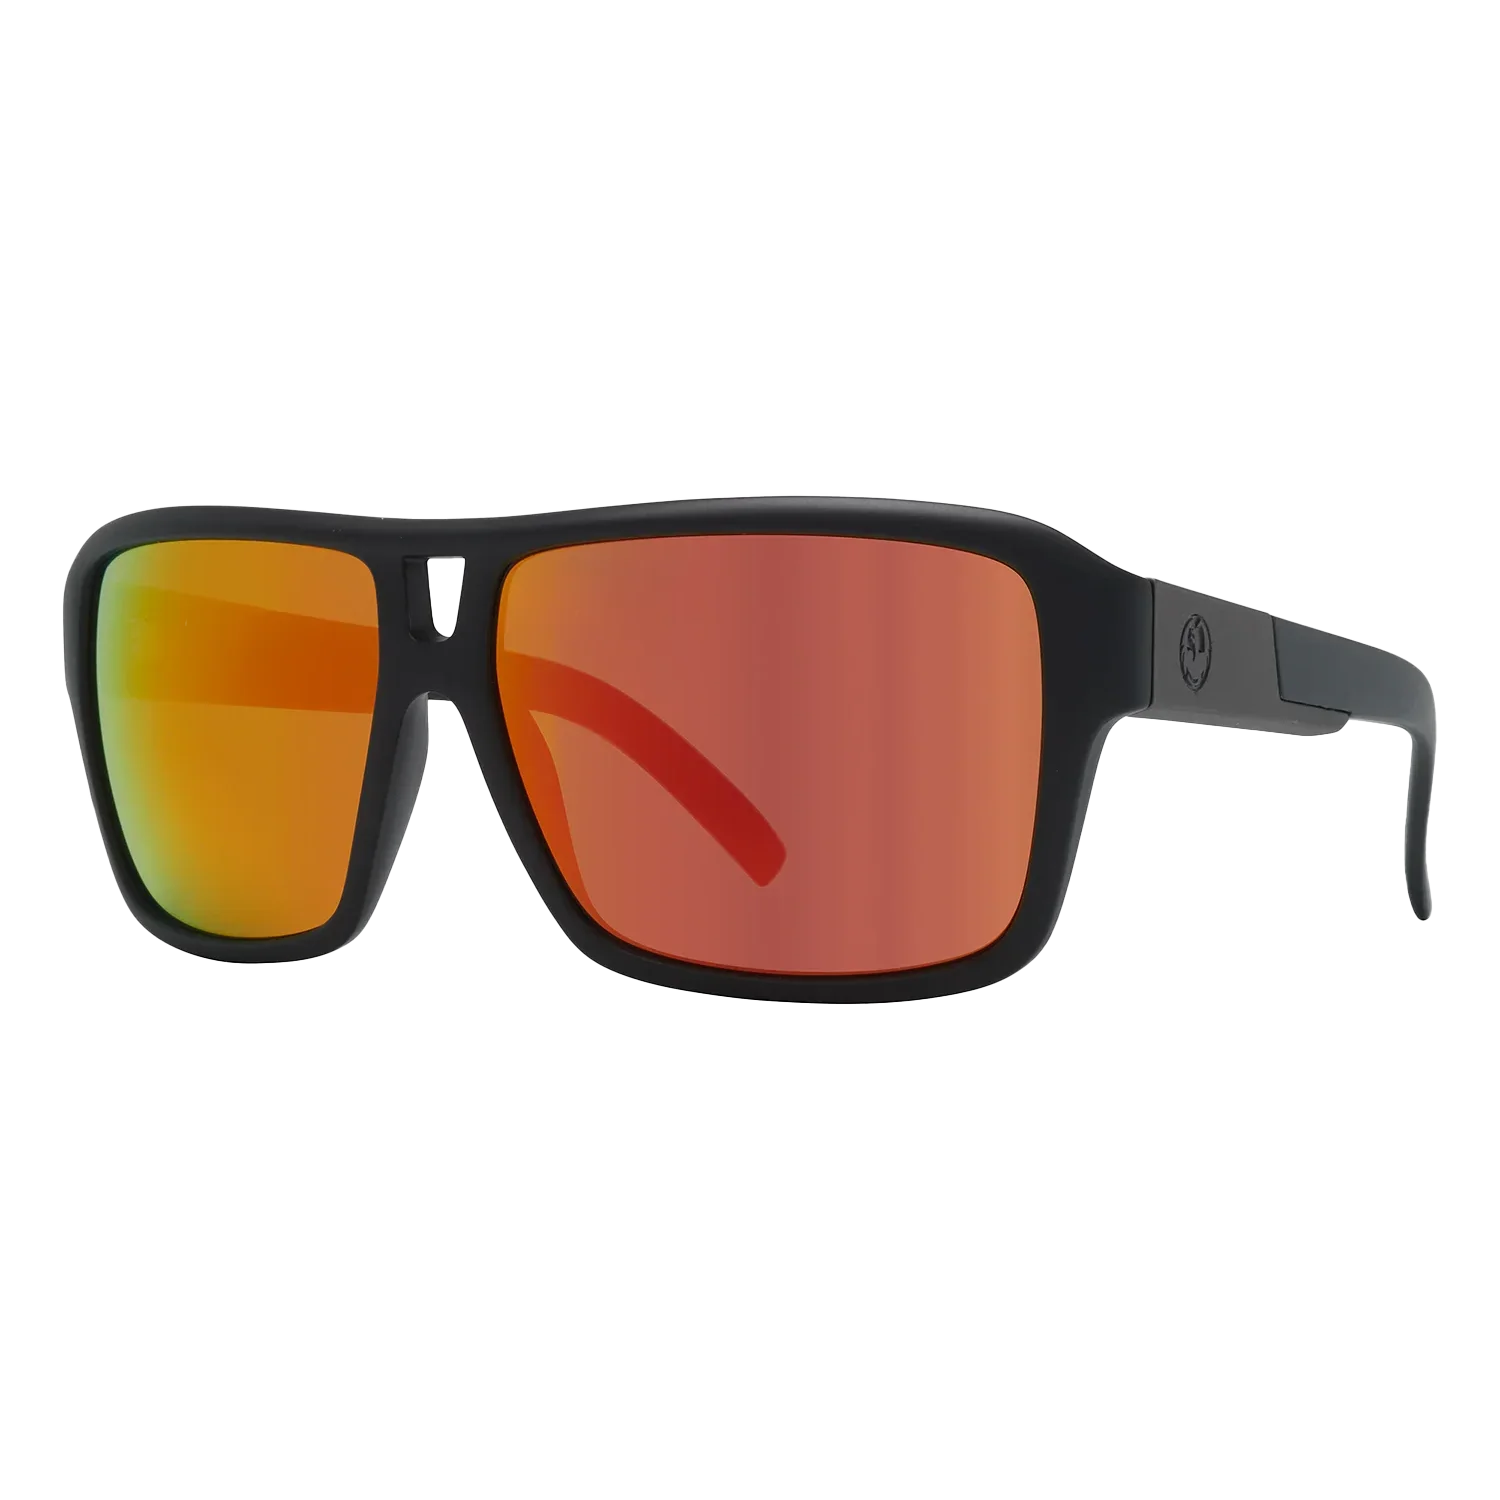 'Dragon The Jam LumaLens Sunglasses' in 'Matte Black W/ Lumalens Red Ion' colour